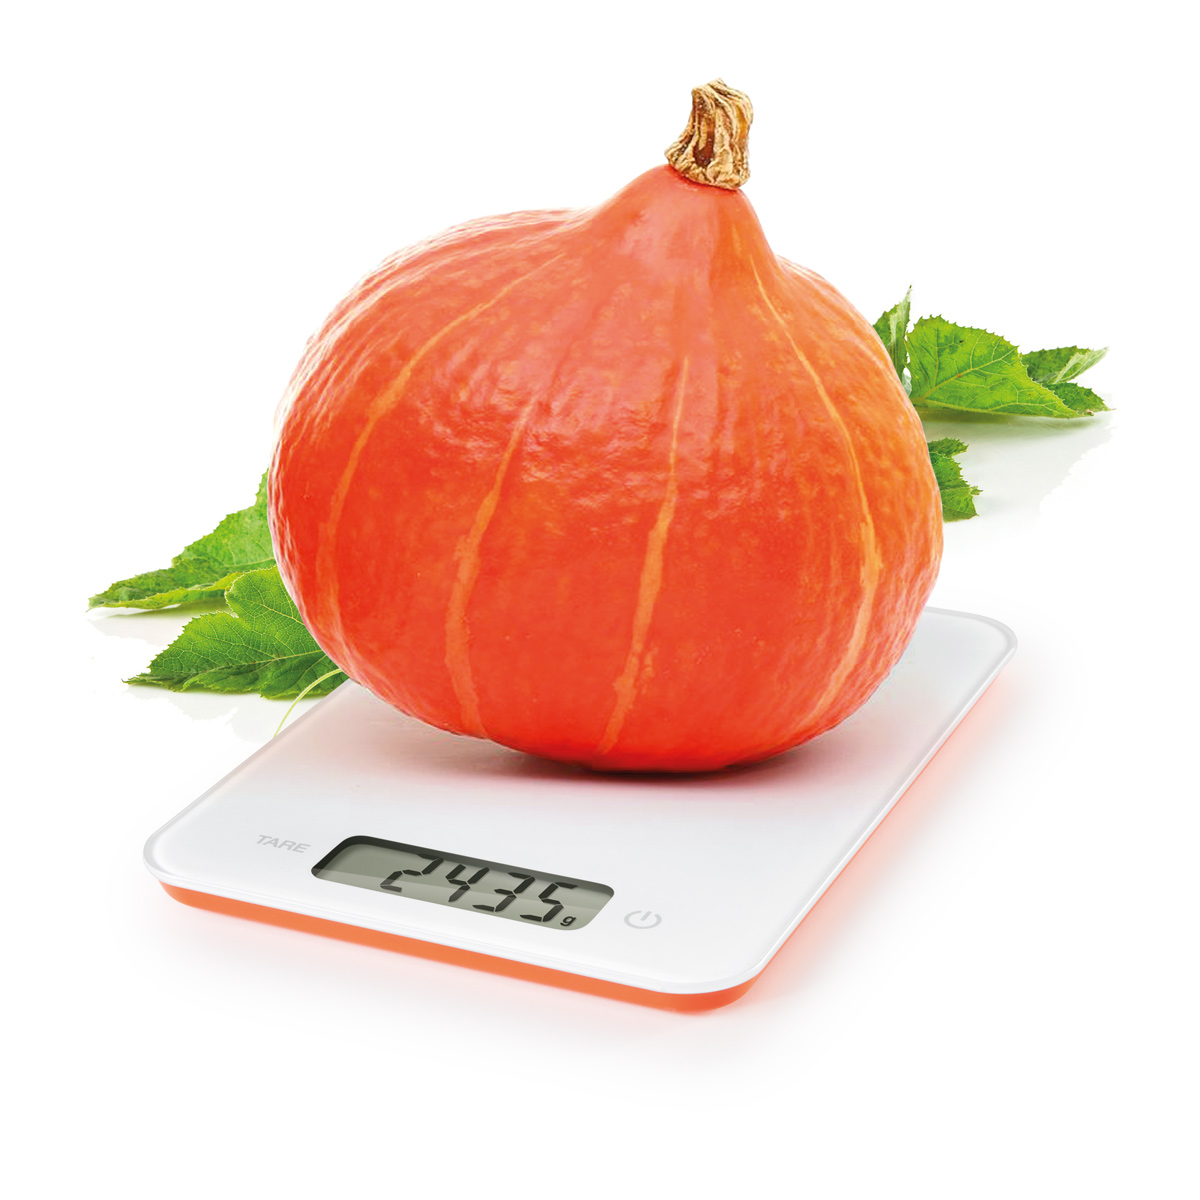 Digitálna kuchynská váha ACCURA 5.0 kg